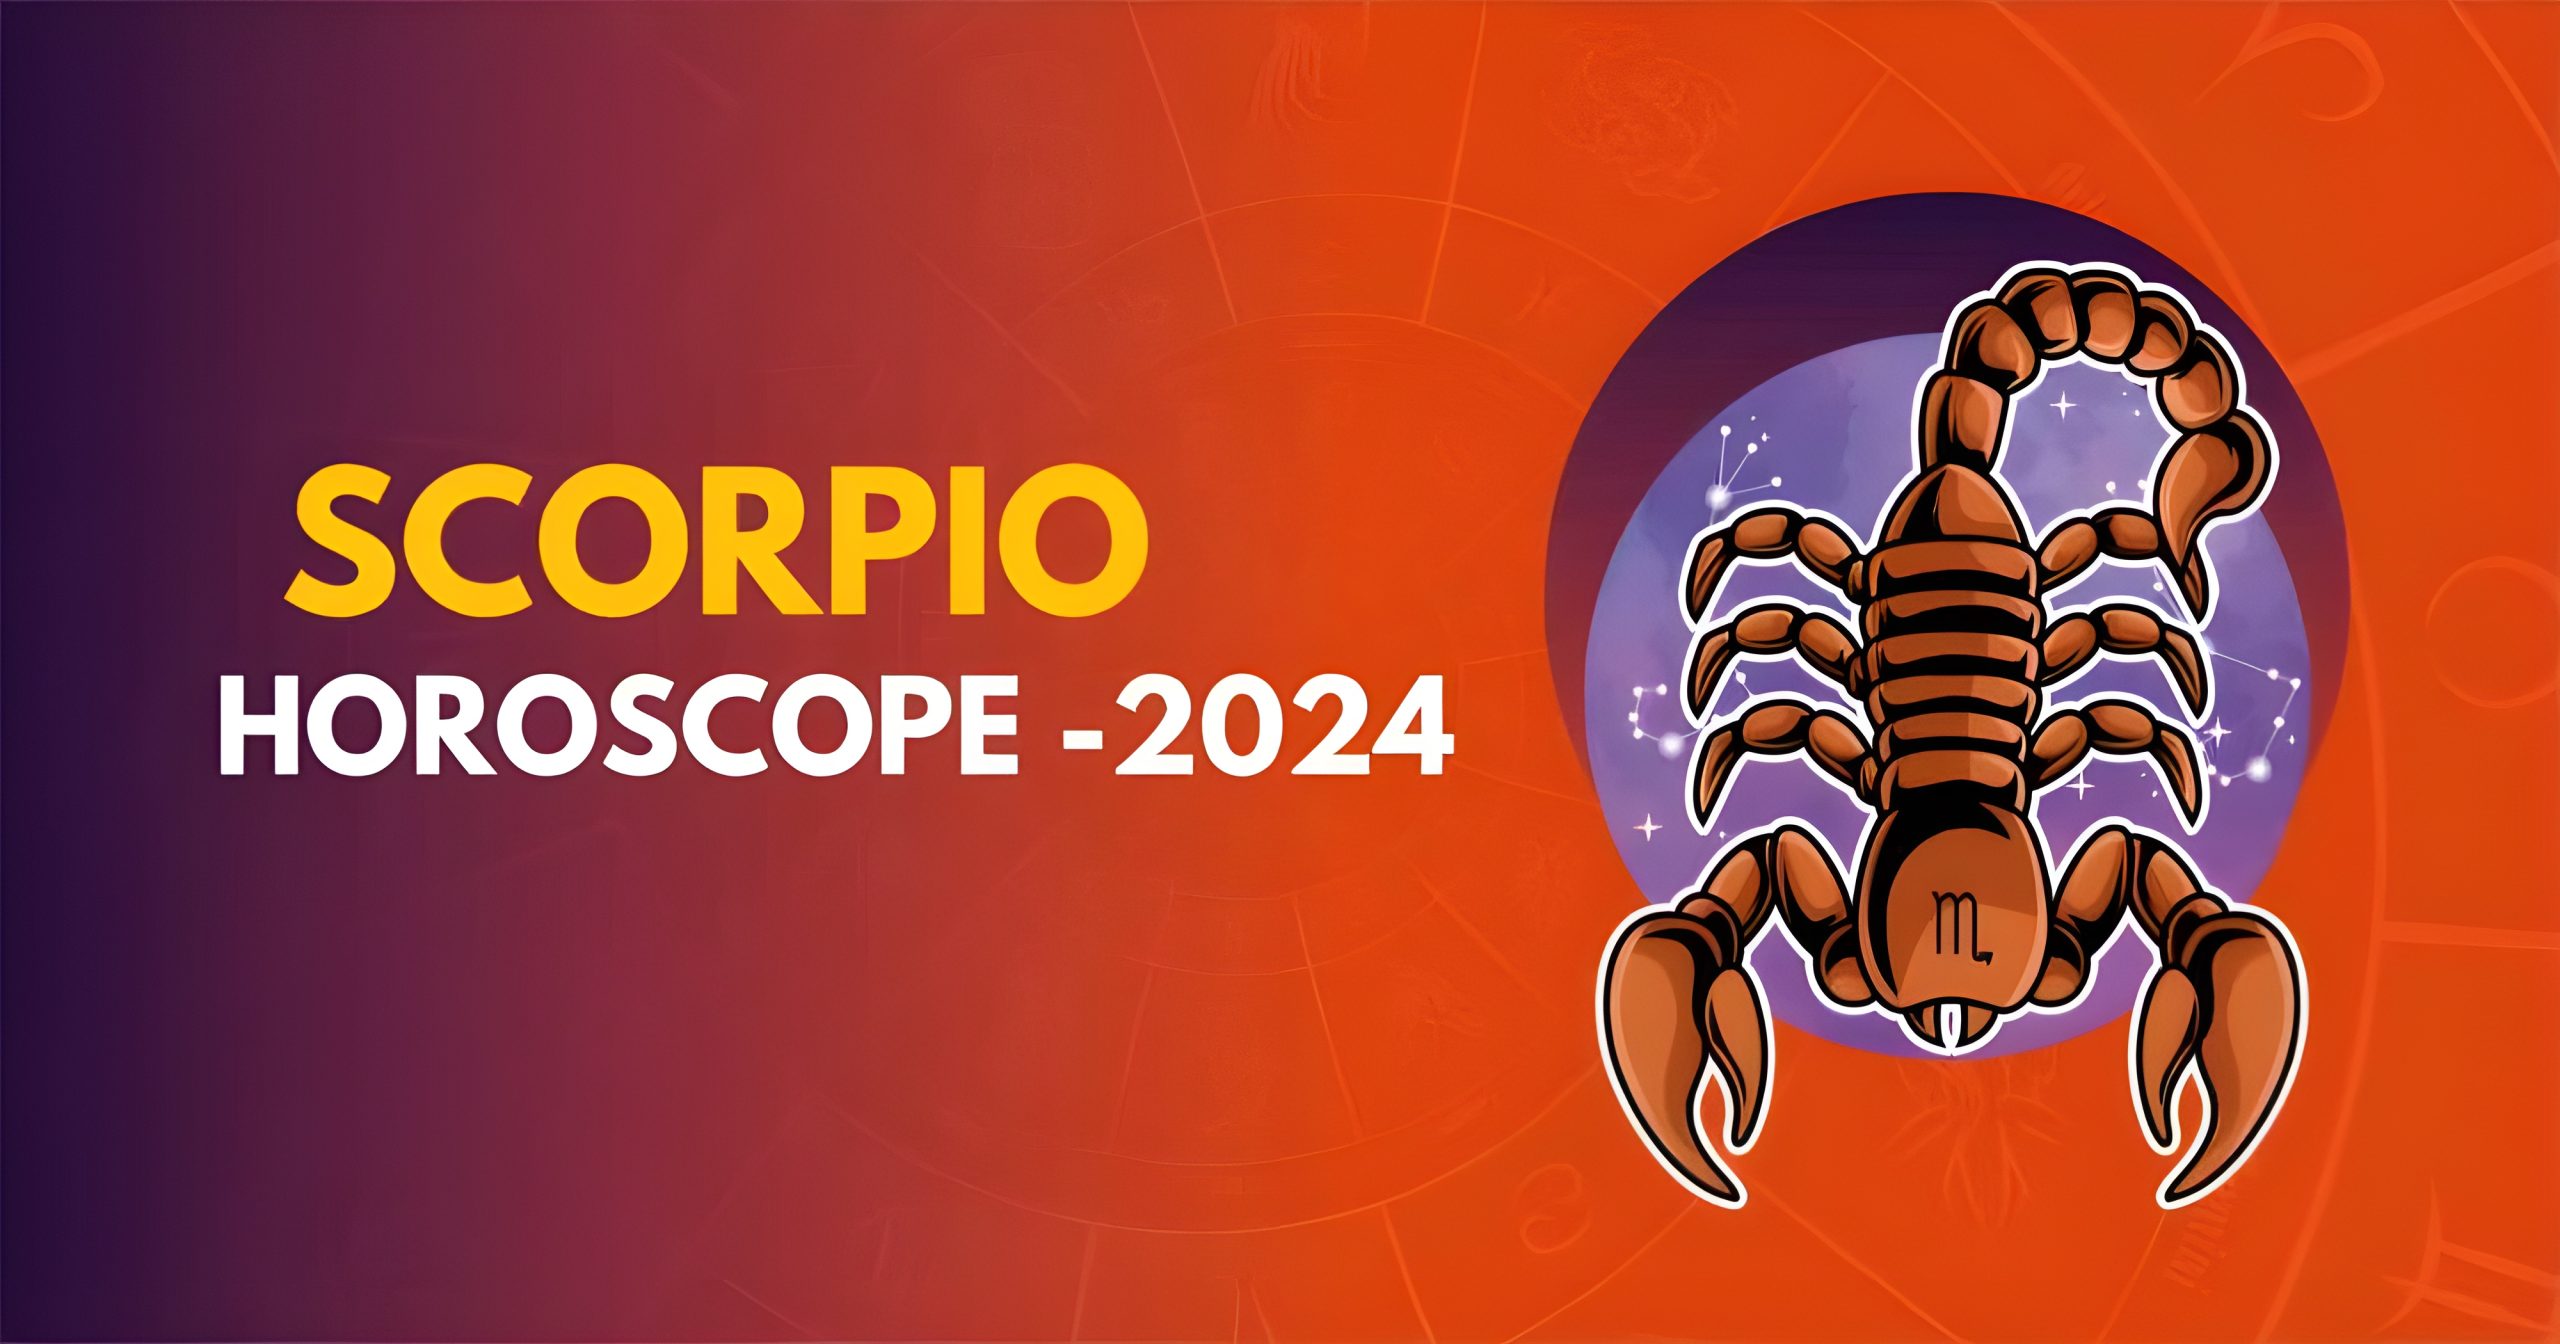 Scorpio Horoscope 2024 Scorpio Yearly Horoscope 2024